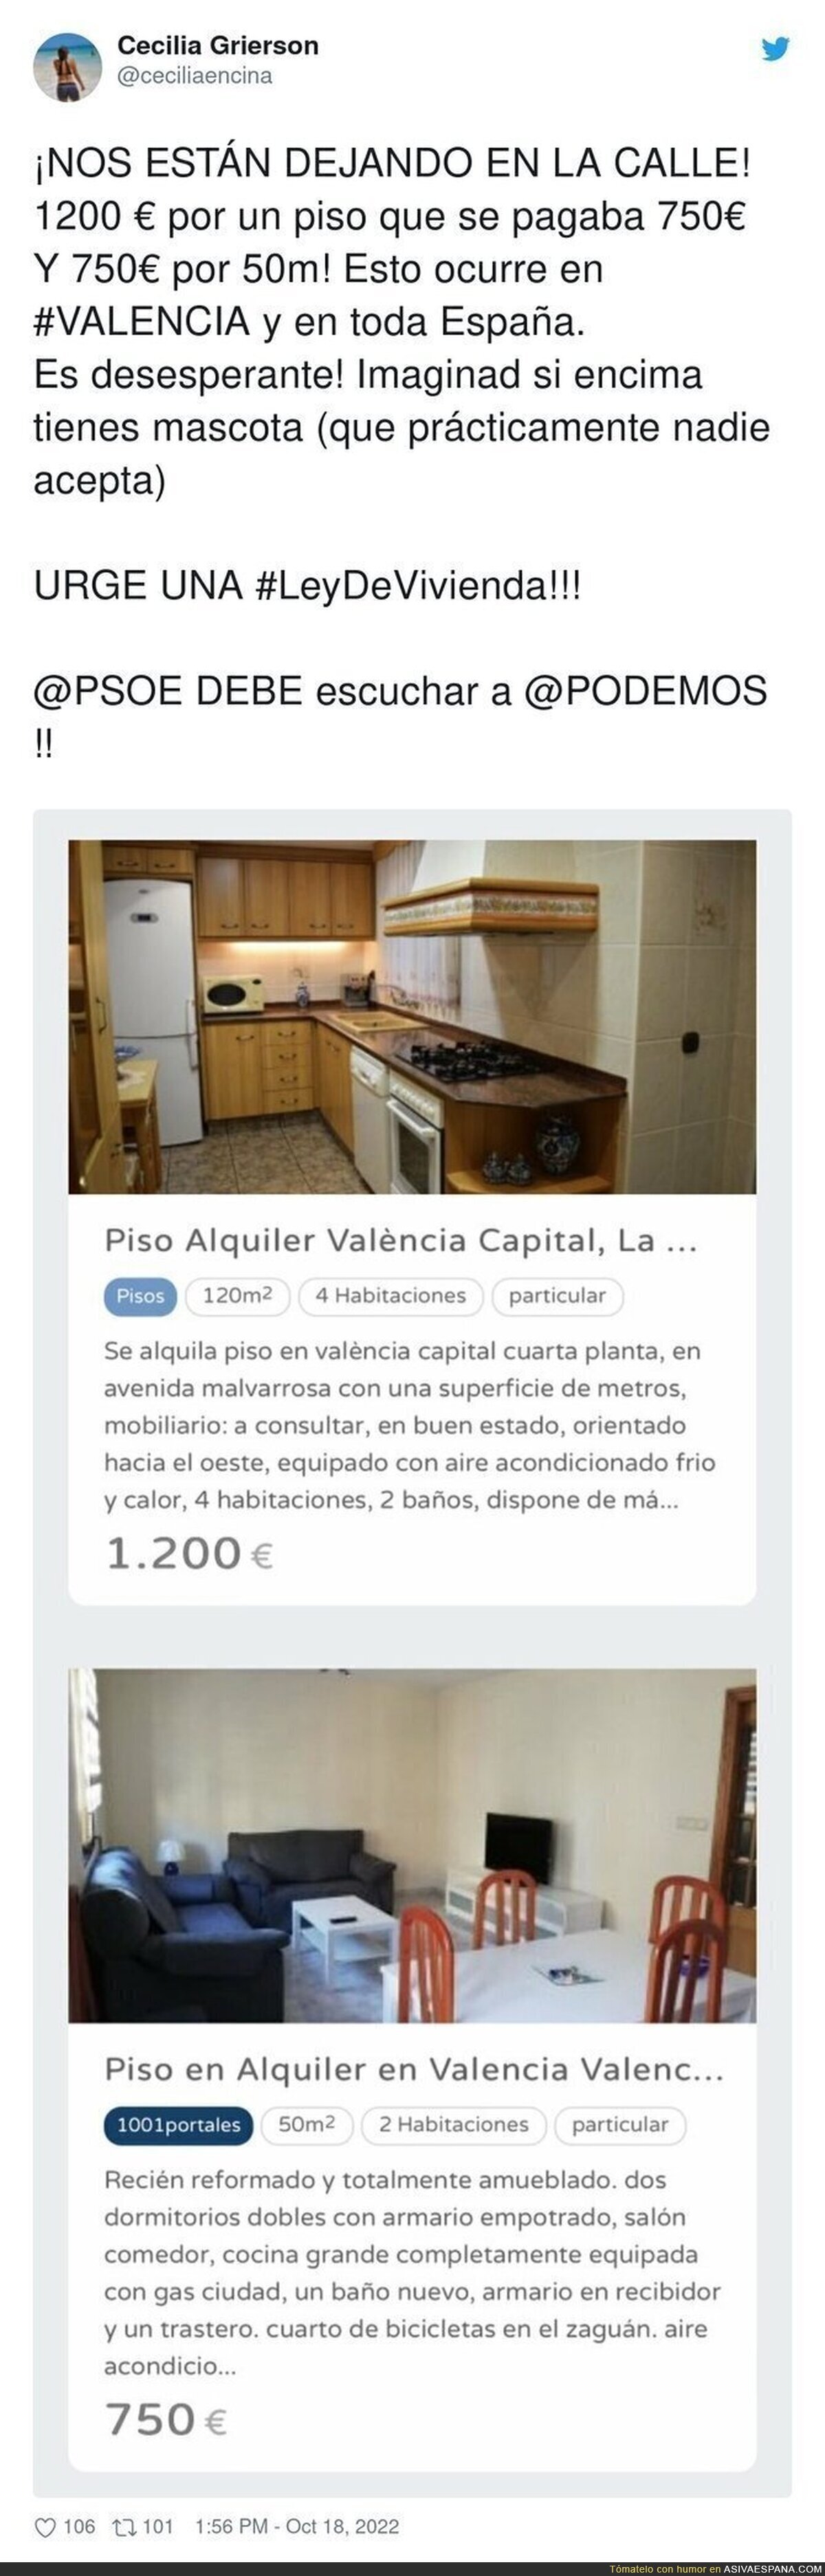 Atención al cambio de precio de este piso de 50m2 en Valencia de un momento a otro